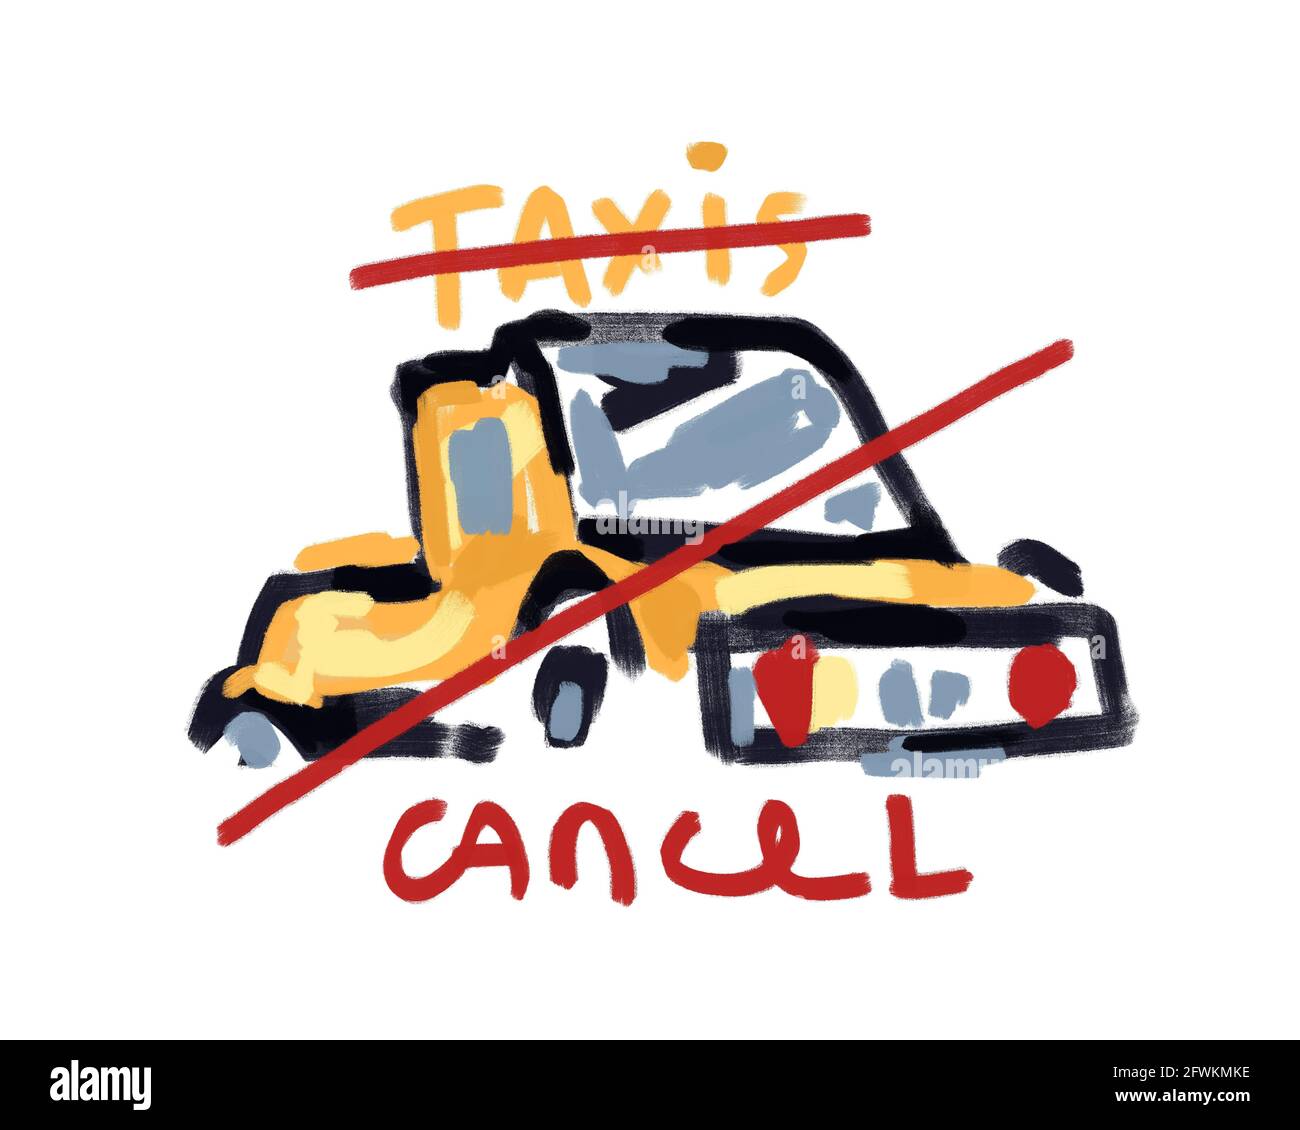 Taxi Cancel t-shirt concept avec taxis texte néo expressionnisme style Art avec modernisme tardif art Art moderne pour l'impression et la décoration d'art mural. Banque D'Images